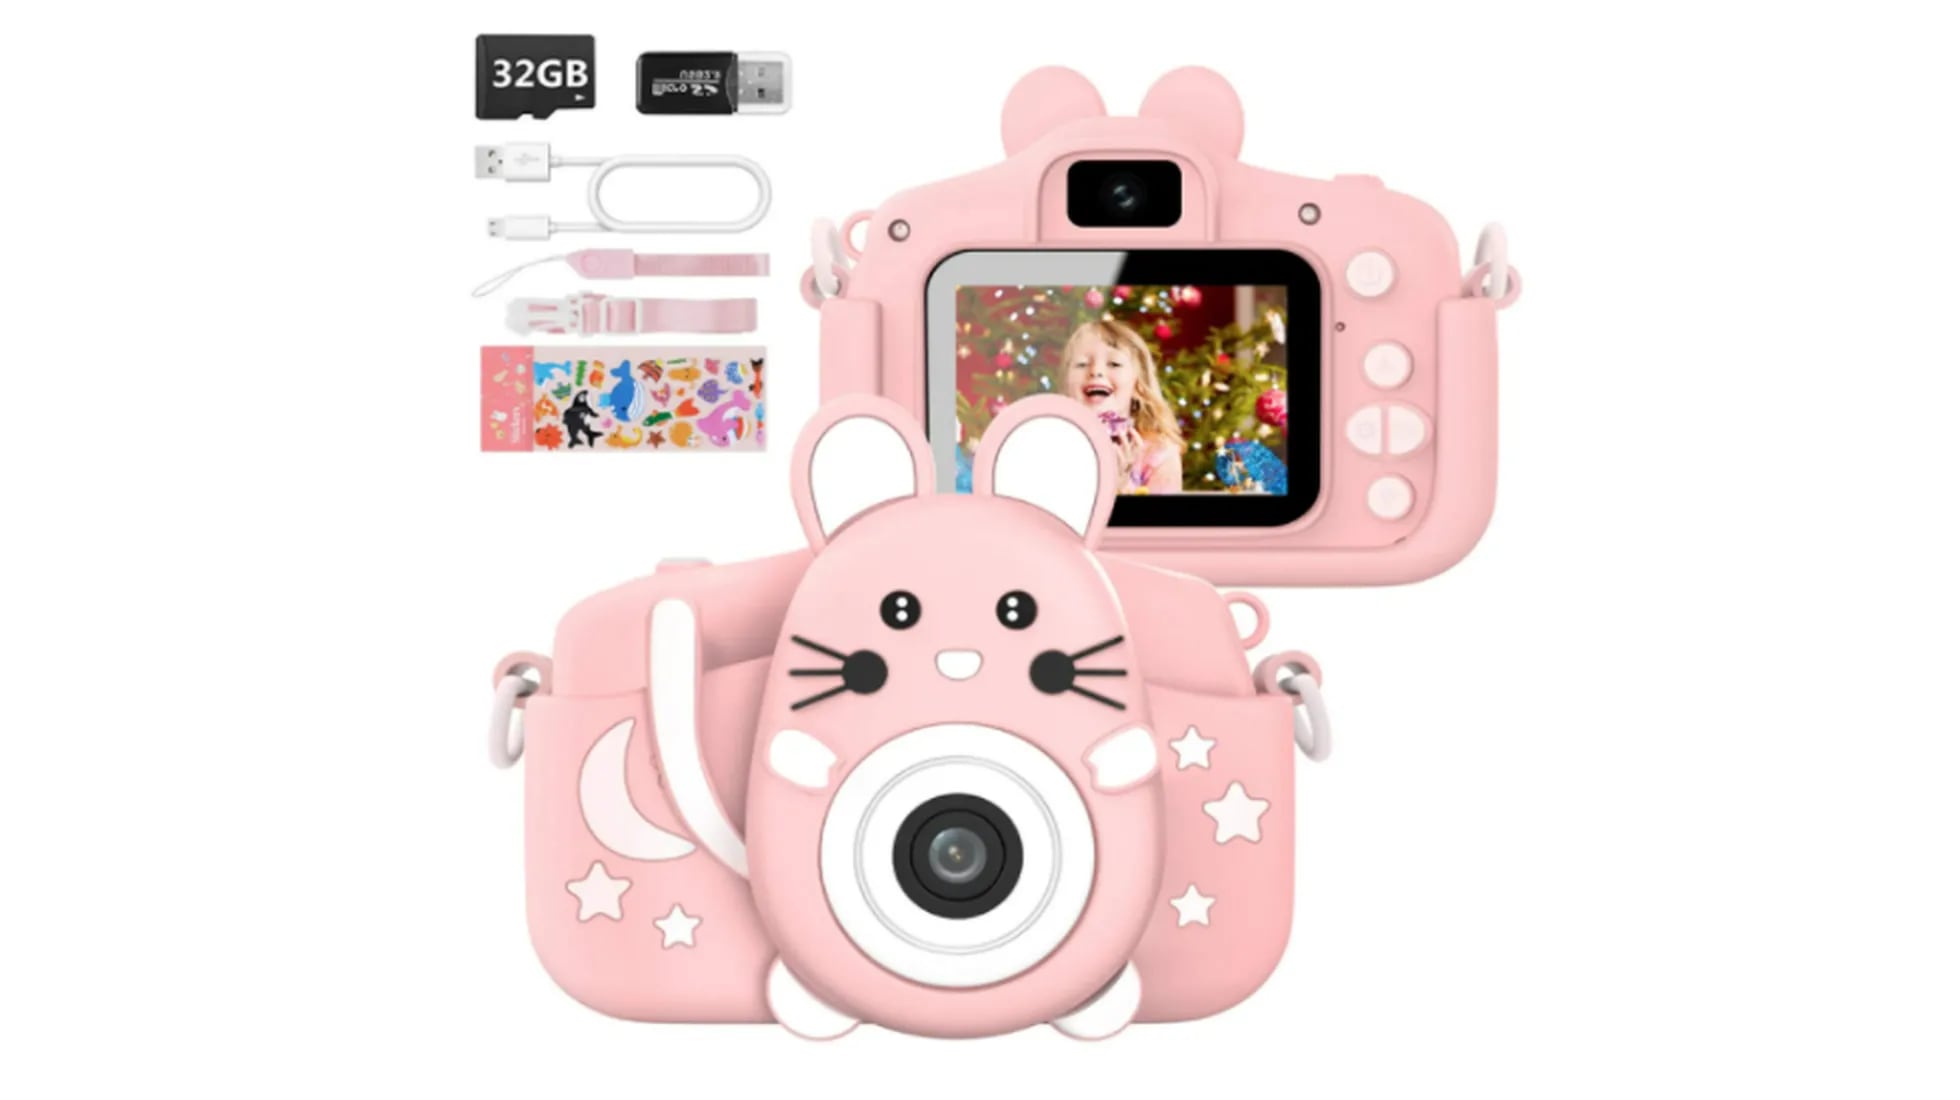 Estas son las mejores cámaras digitales para niños